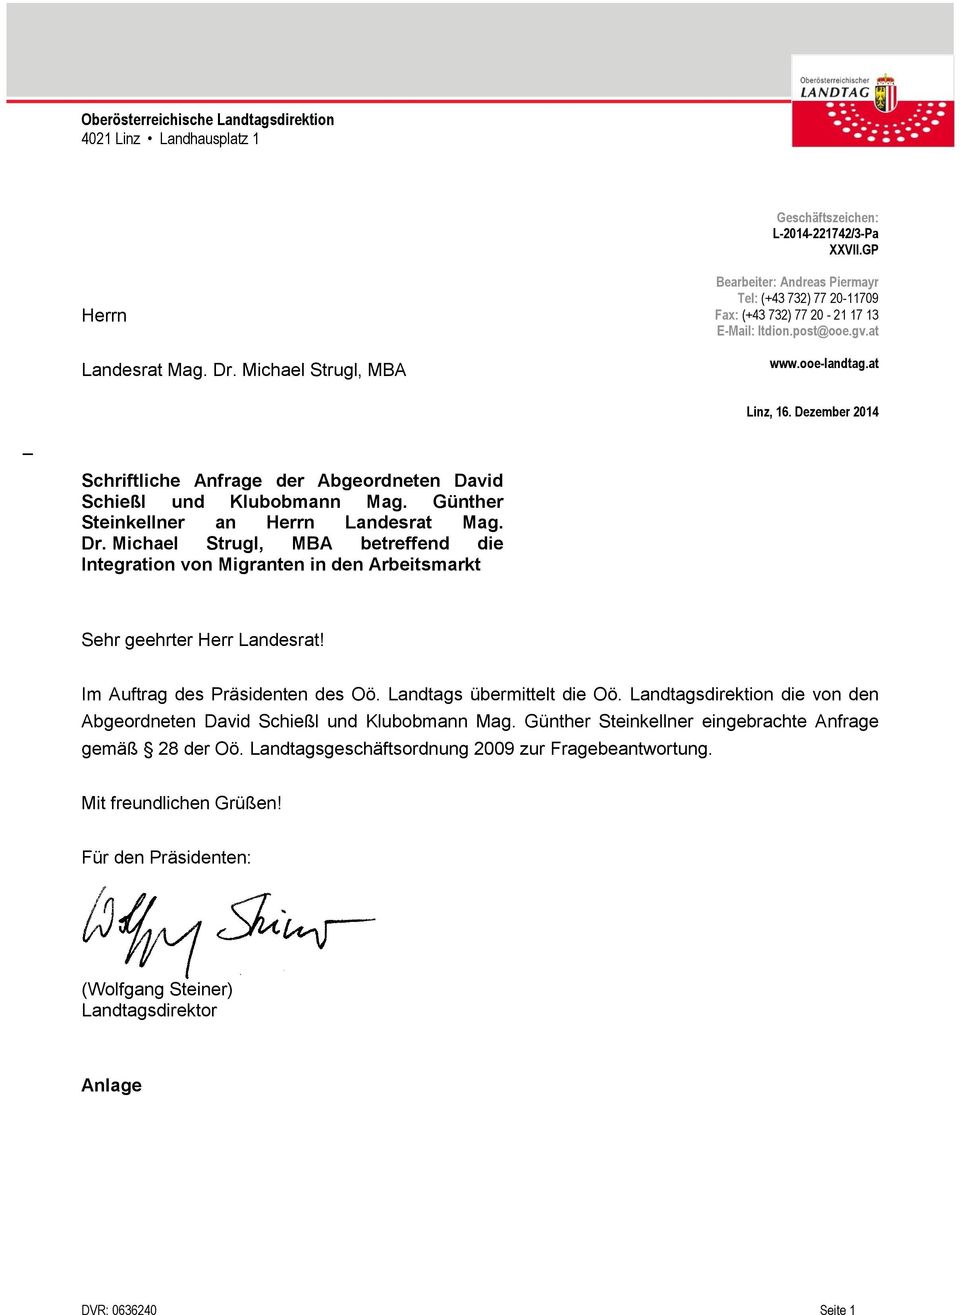 Dezember 2014 _ Schriftliche Anfrage der Abgeordneten David Schießl und Klubobmann Mag. Günther Steinkellner an Herrn Landesrat Mag. Dr.